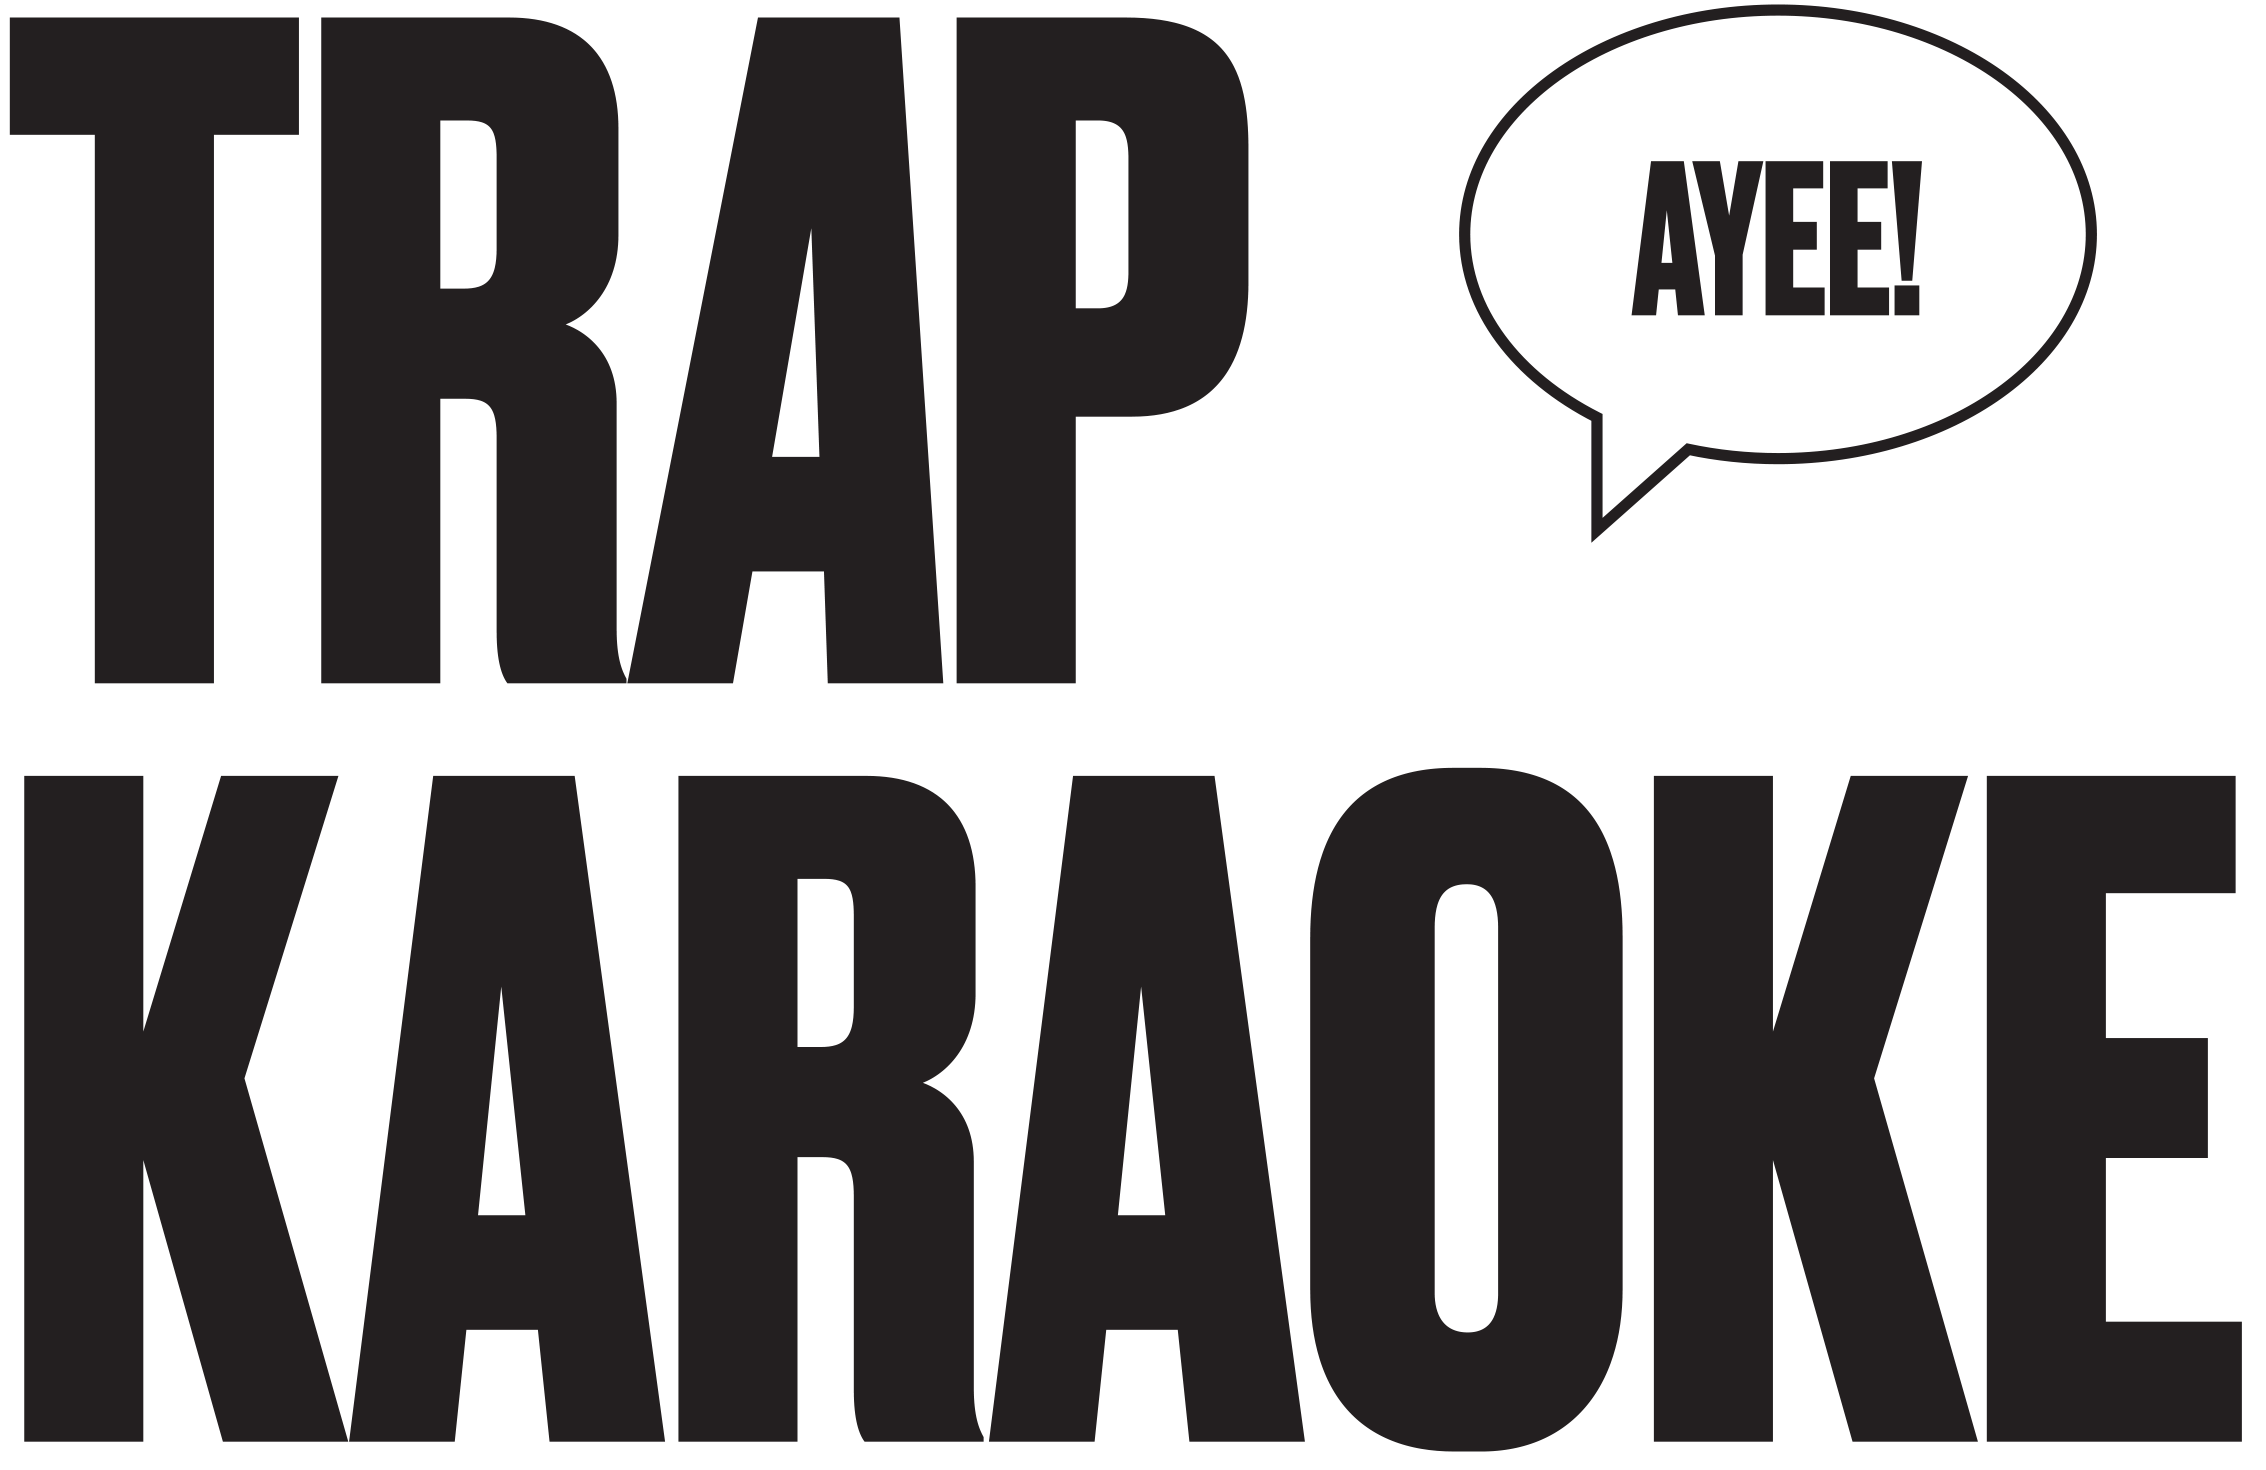 Trap Karaoke Logo